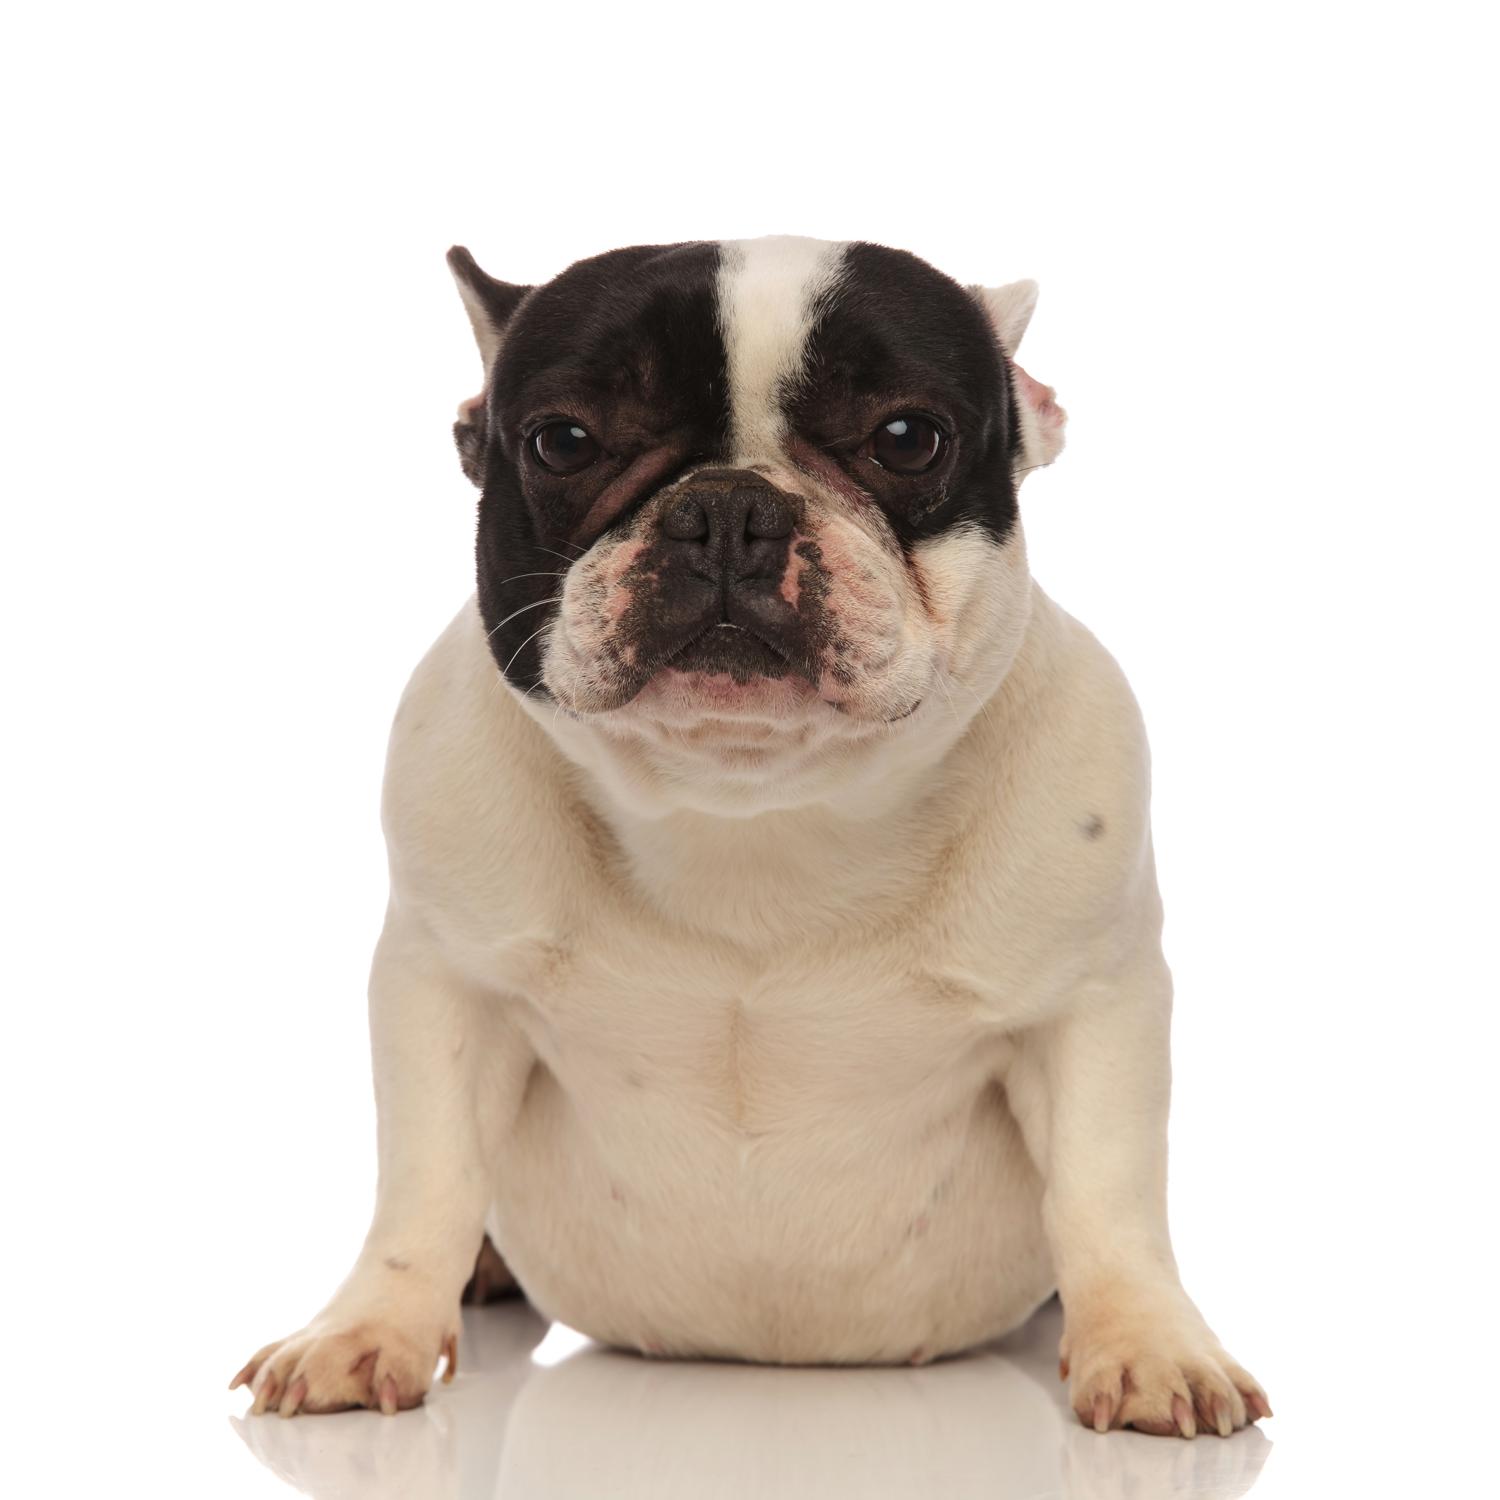 Französische Bulldogge dicker Bauch – Was hat das zu bedeuten?